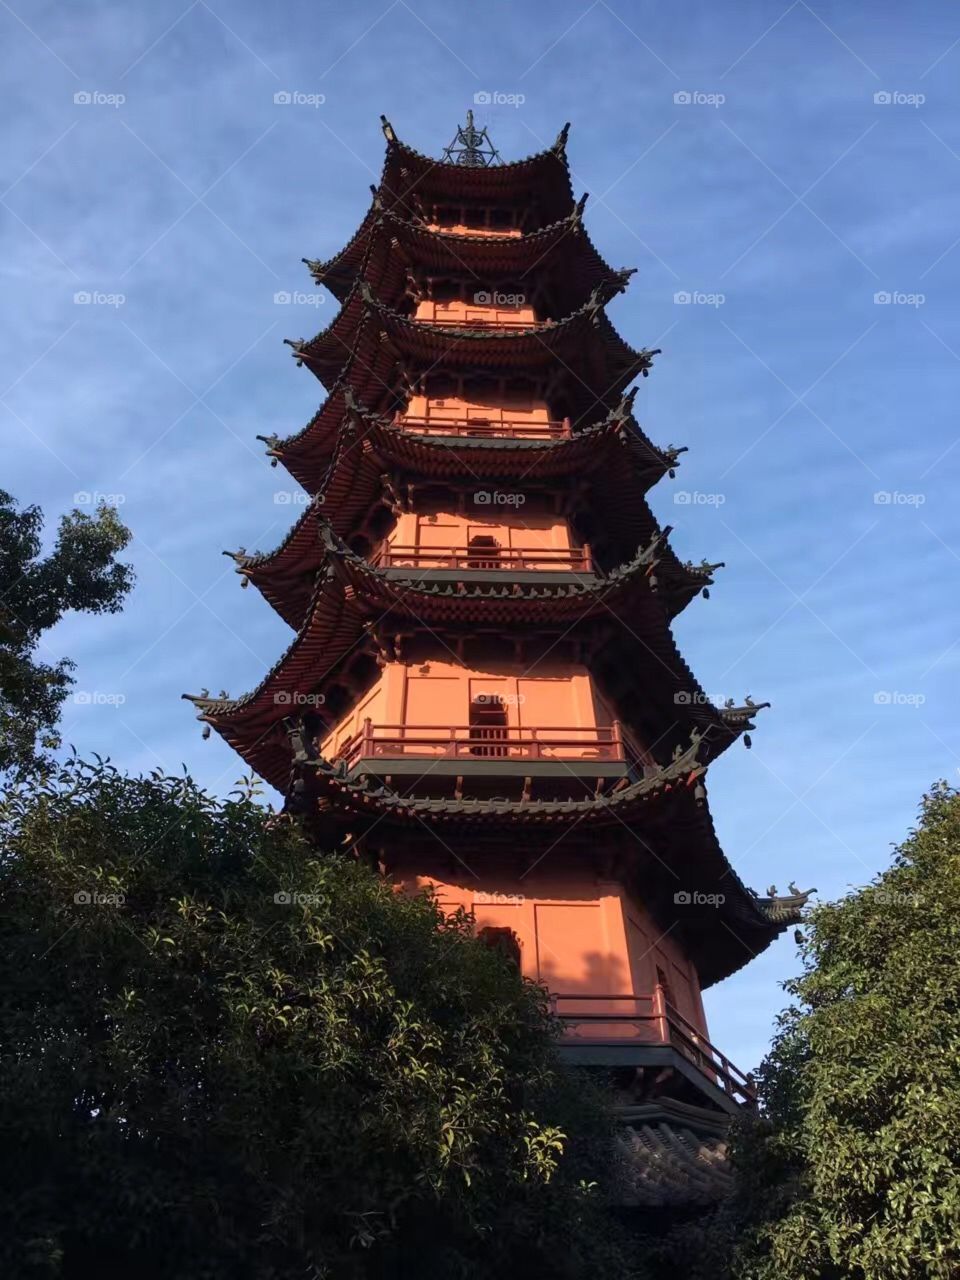 No Person, Temple, Pagoda, Travel, Architecture